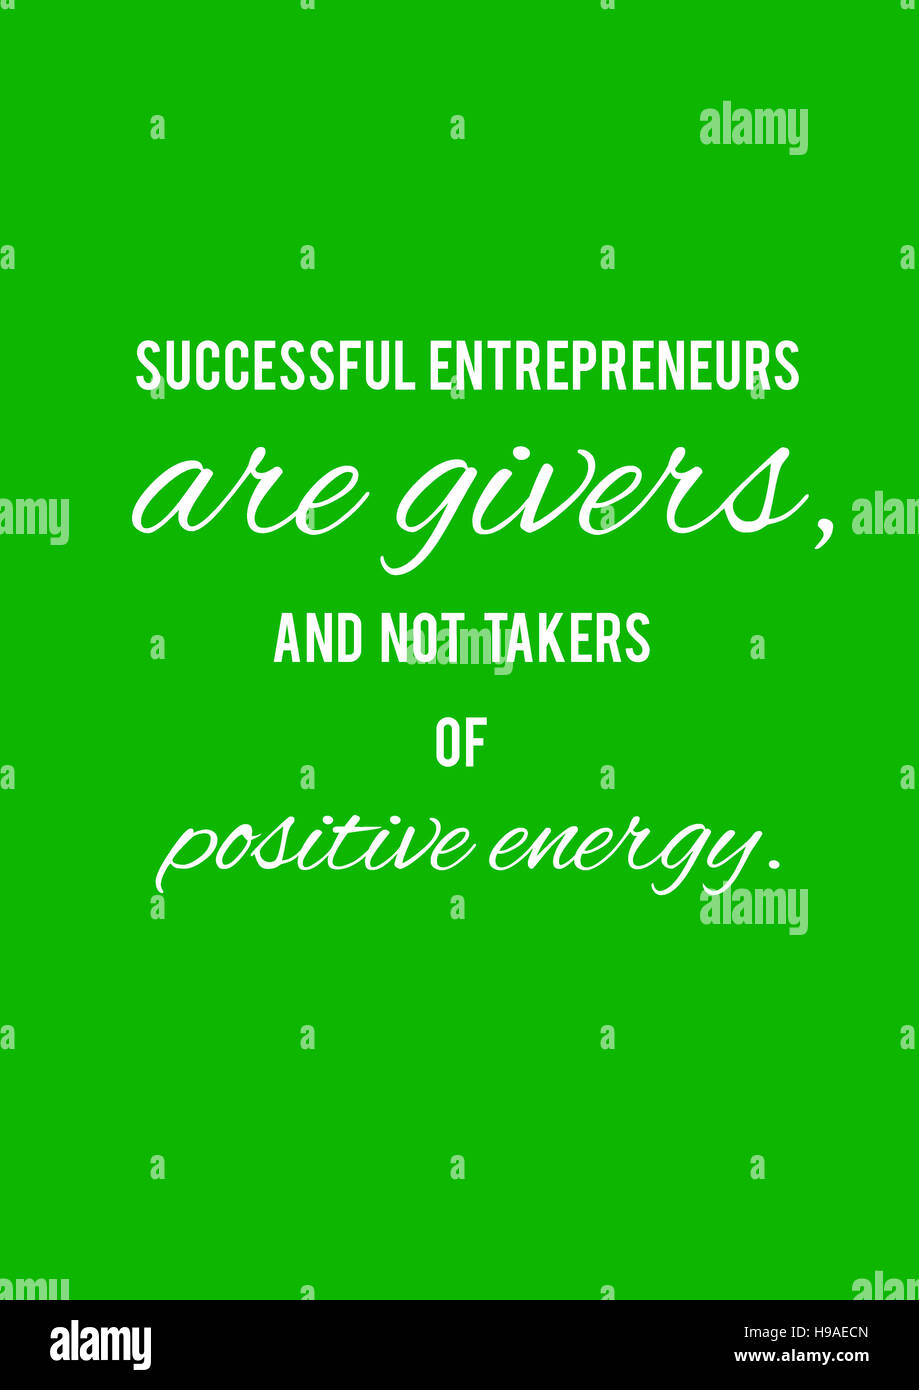 Erfolgreiche Unternehmer sind Geber und nicht Abnehmer von positiver Energie.  Motivation, Plakat, Zitat, Illustration, grüner Hintergrund, weiße Buchstaben. Stockfoto